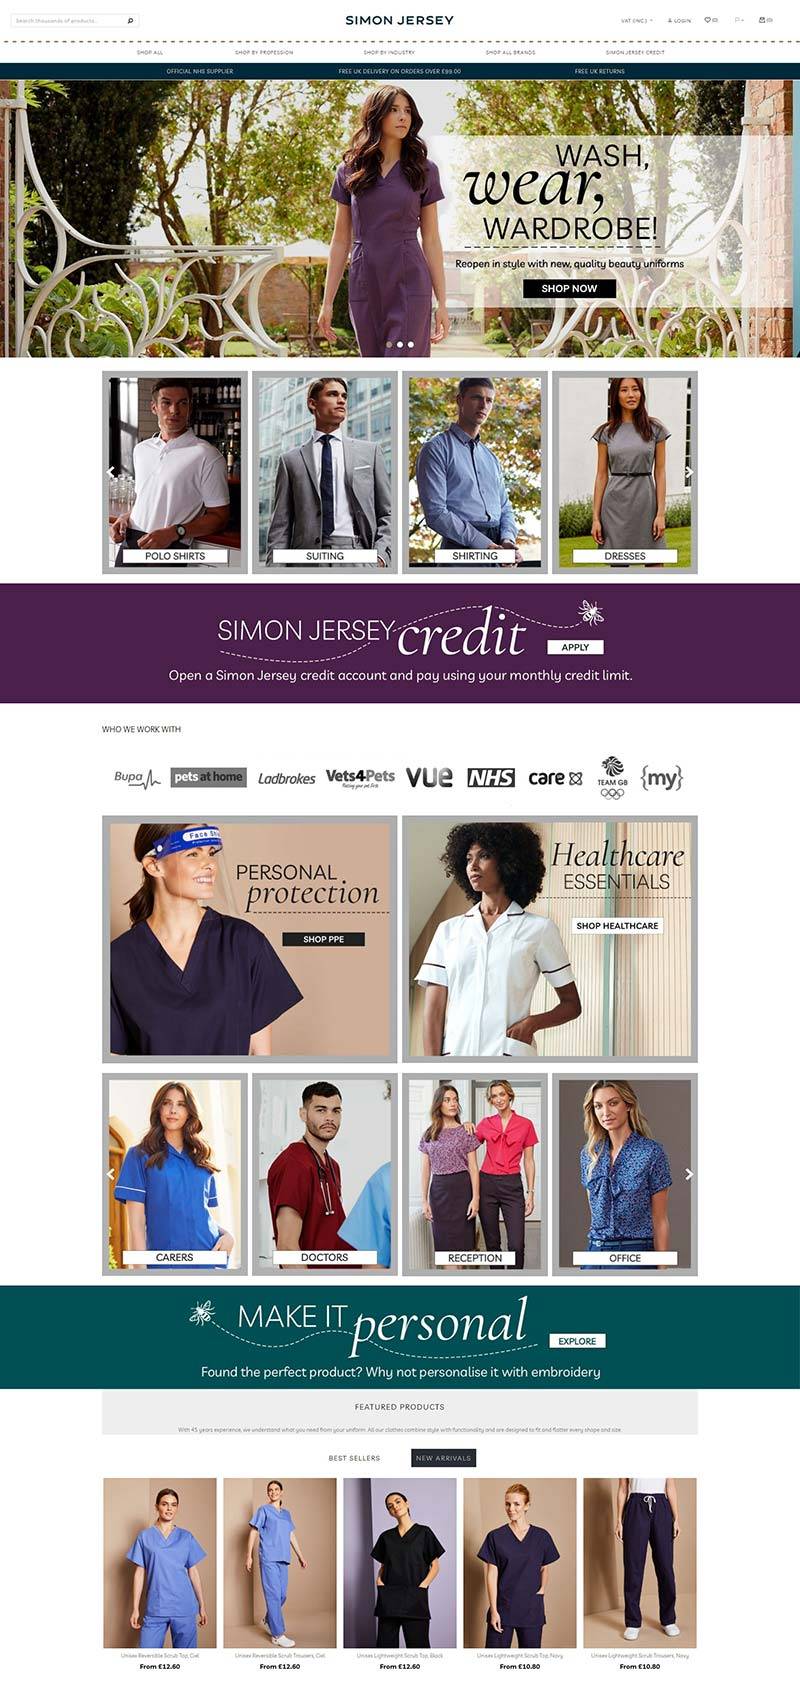 Simon Jersey 英国工装服饰品牌购物网站